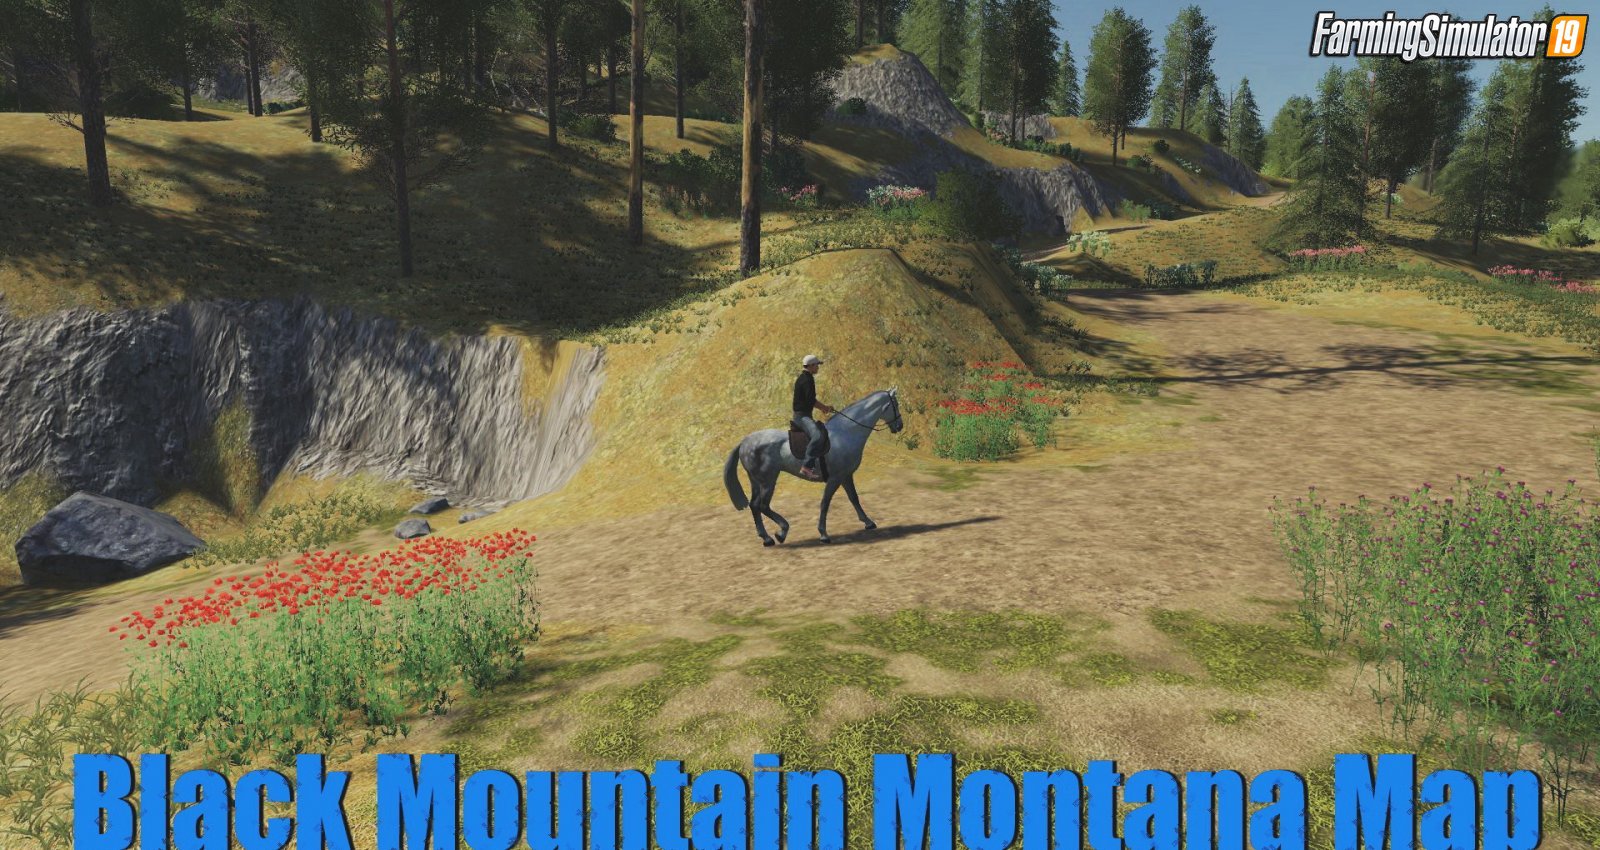 Black Mountain Montana Map v1.1 for FS19